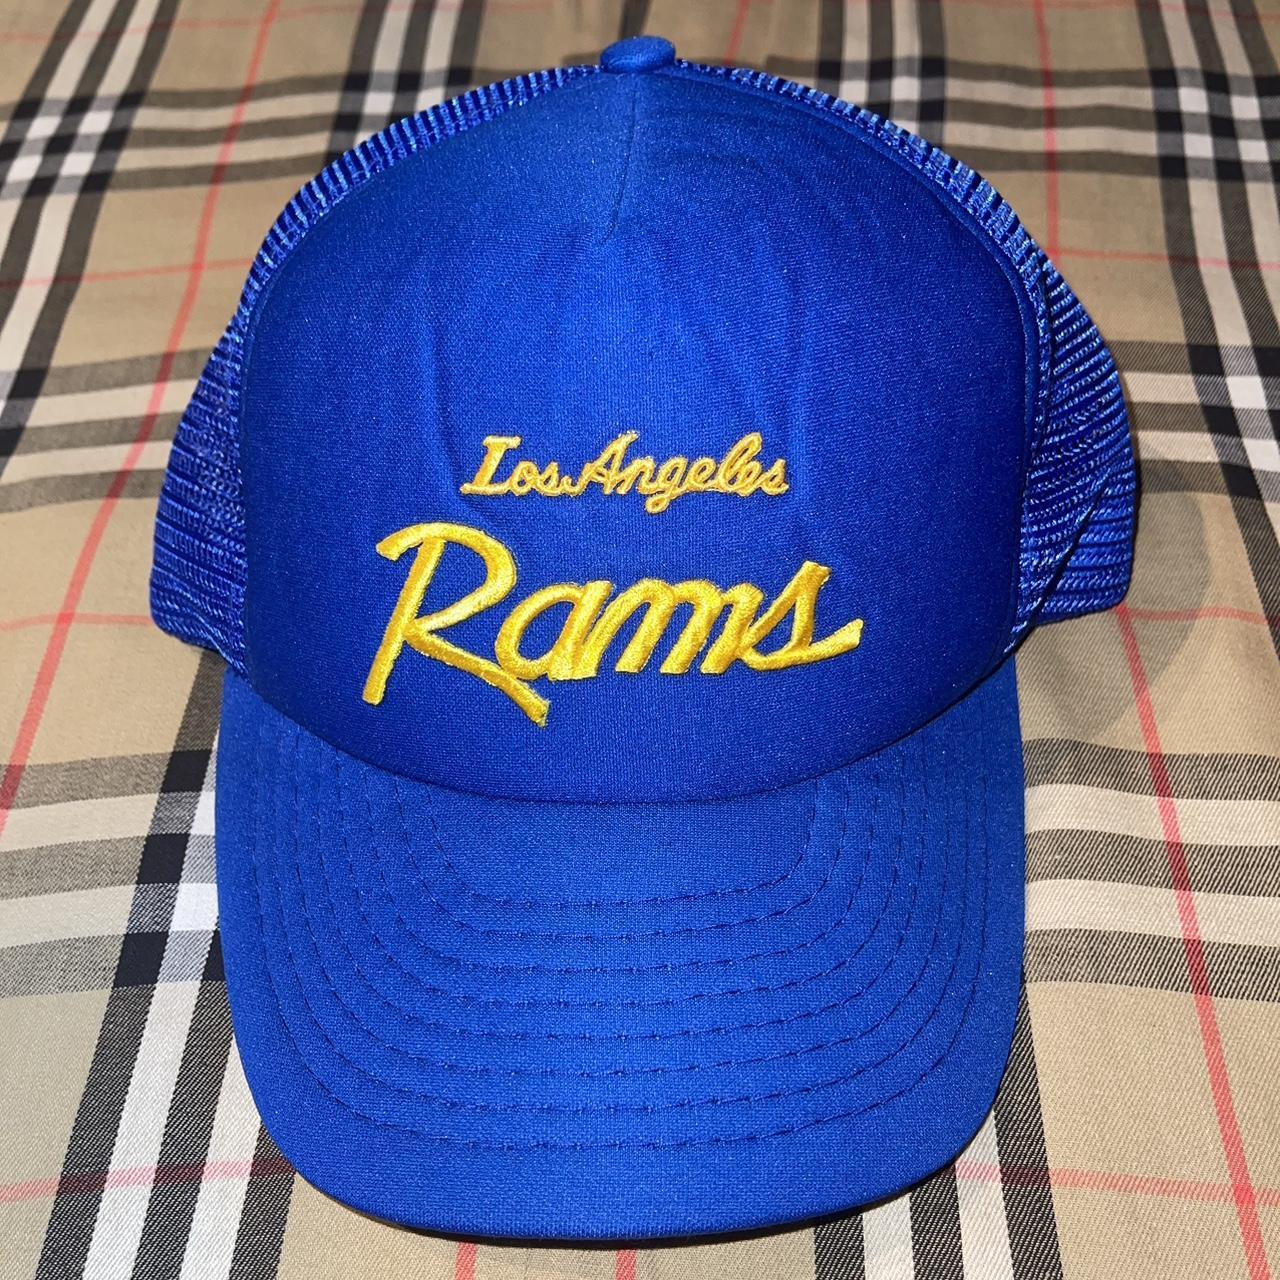 Vintage 80s Los Angeles Rams NFL trucker hat made in - Depop